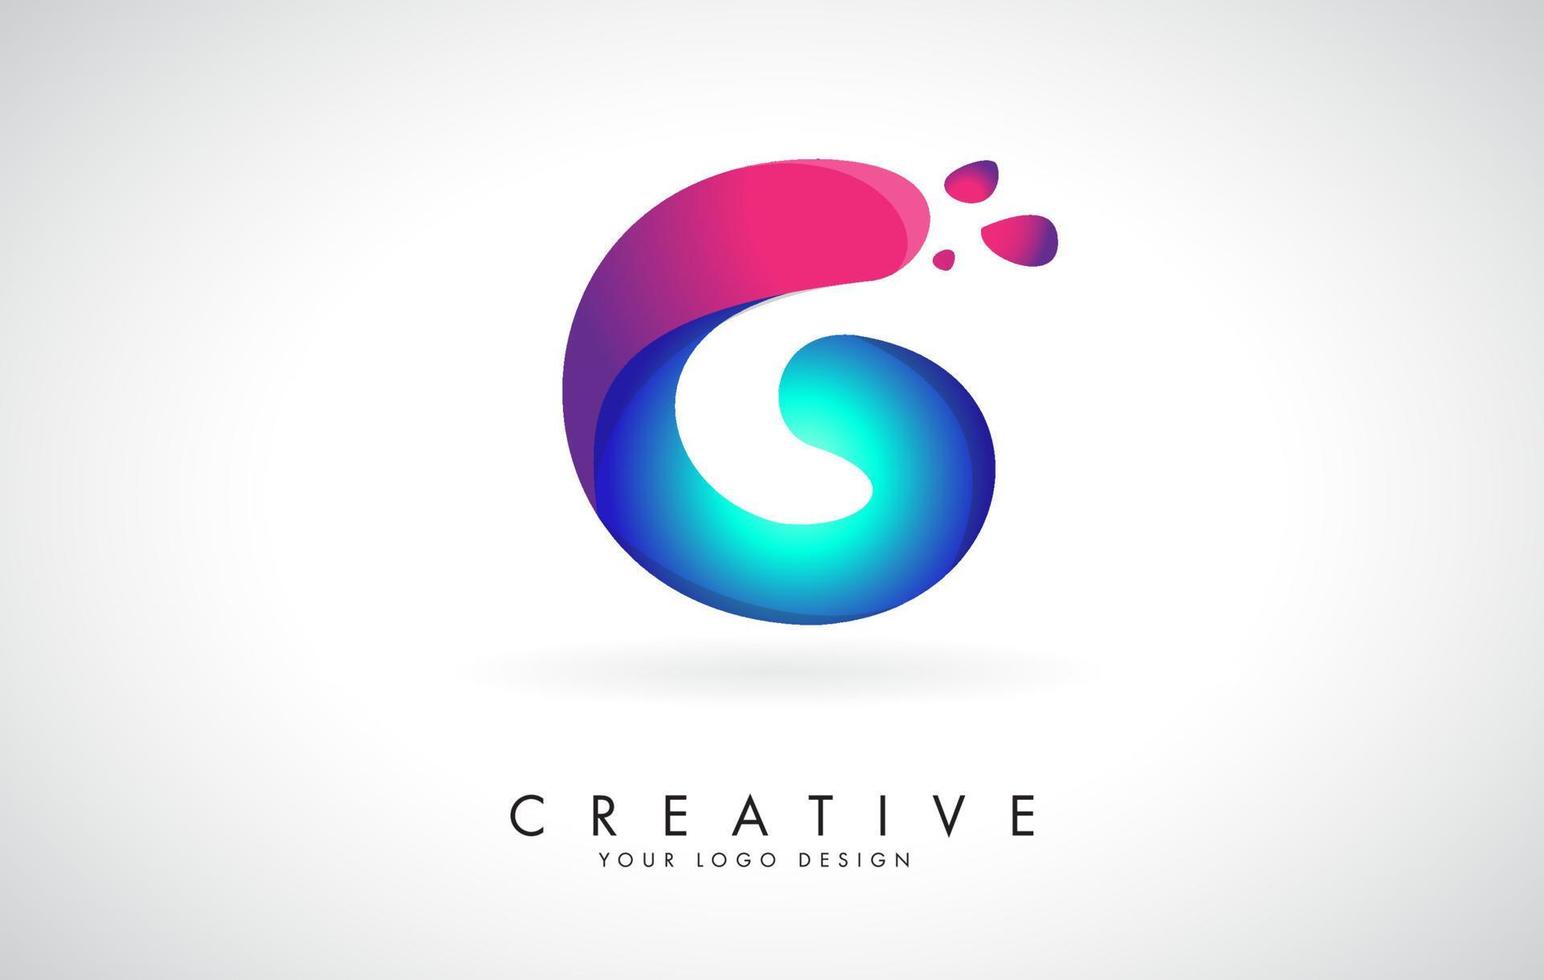 Diseño de logotipo letra g creativa azul y rosa con puntos. entretenimiento corporativo amigable, medios, tecnología, diseño de vectores de negocios digitales con gotas.